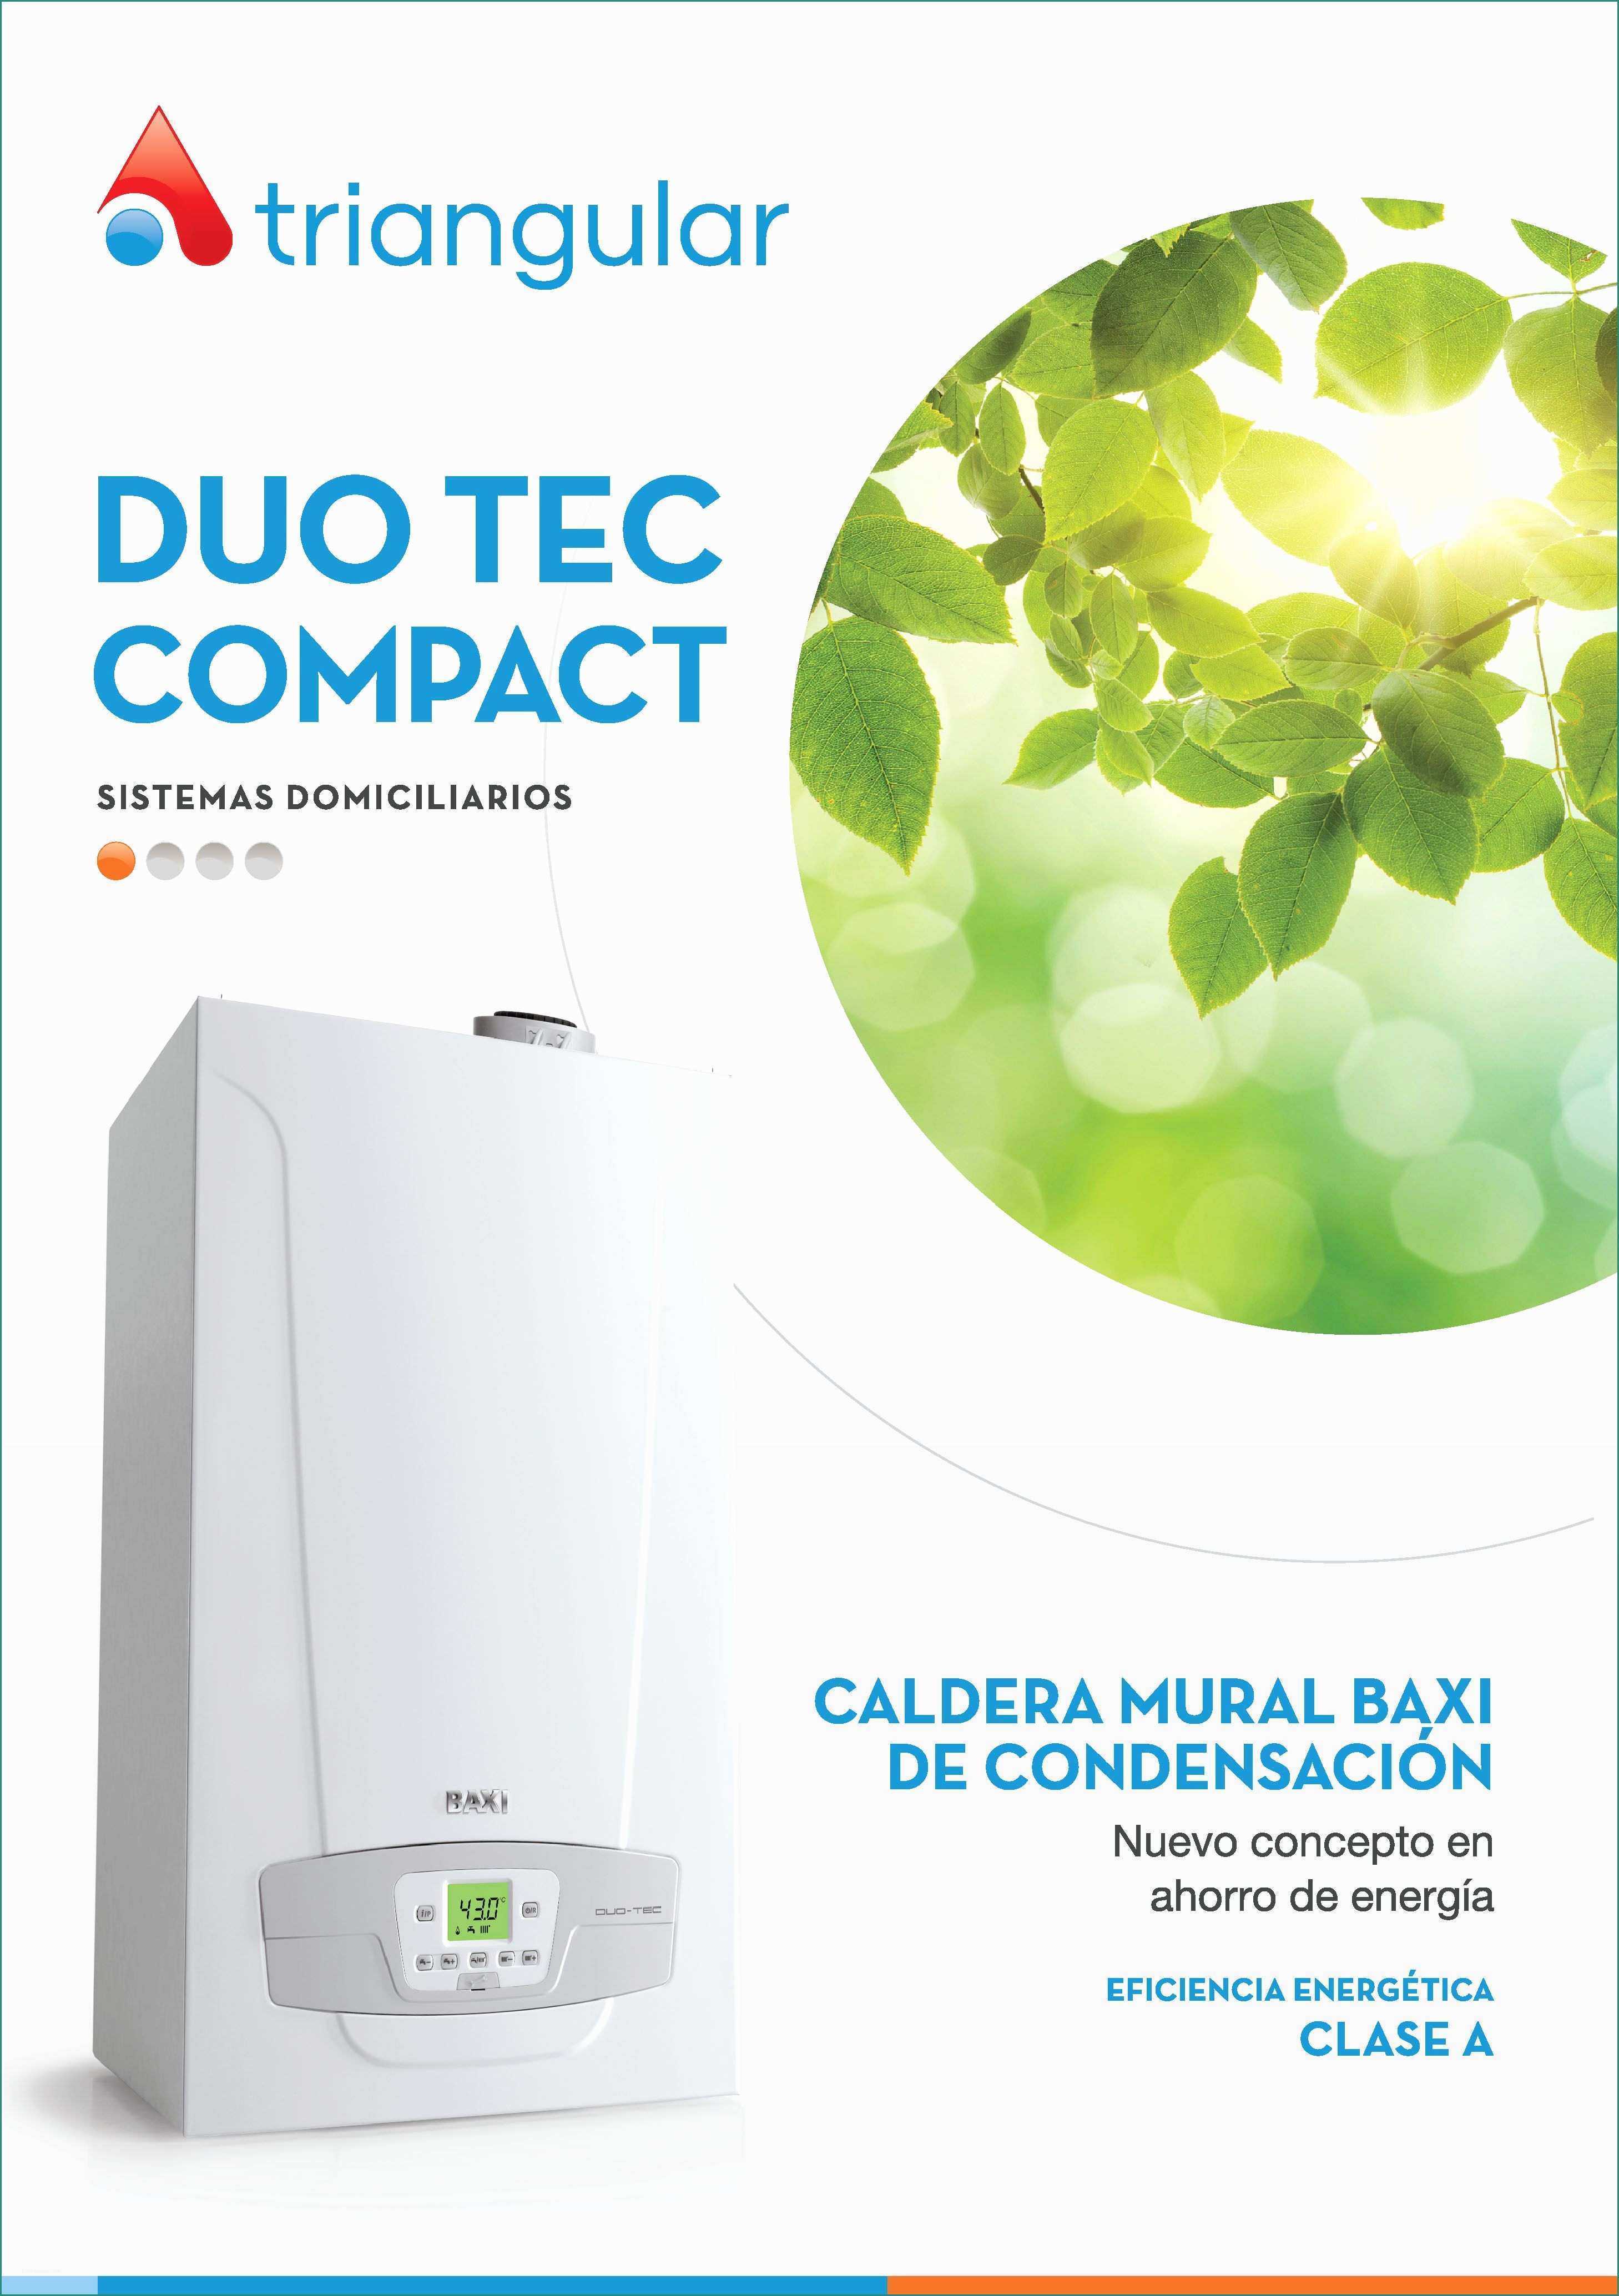 Baxi Eco Compact E Duo Tec Pact Caldera Mural Baxi De Condensaci³n Descargá El